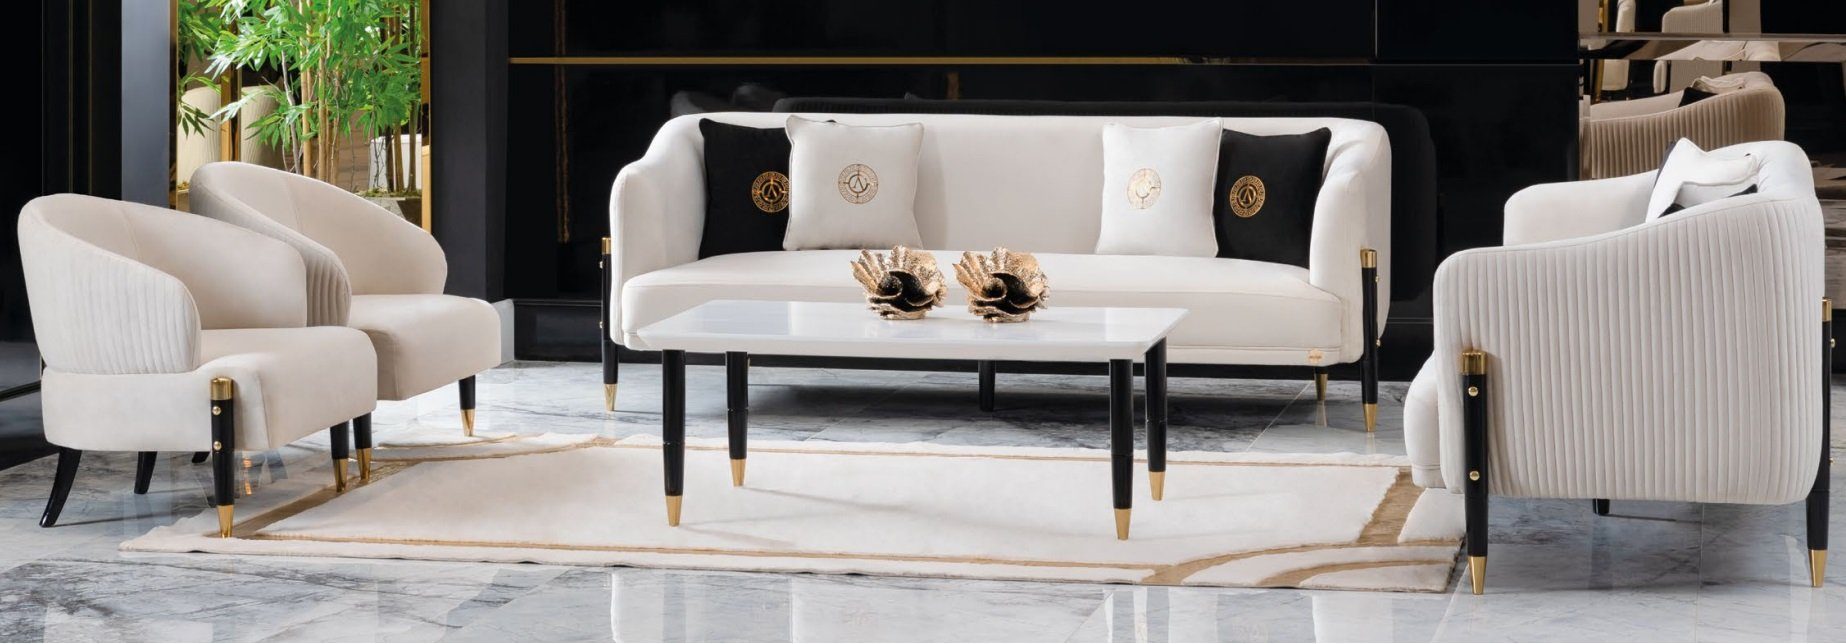 Holen Sie es sich online! JVmoebel Sofa Weiße Sofagarnitur Design 3+3+1+1, Sofas Made Sitz Samt Couch in Europe Polster